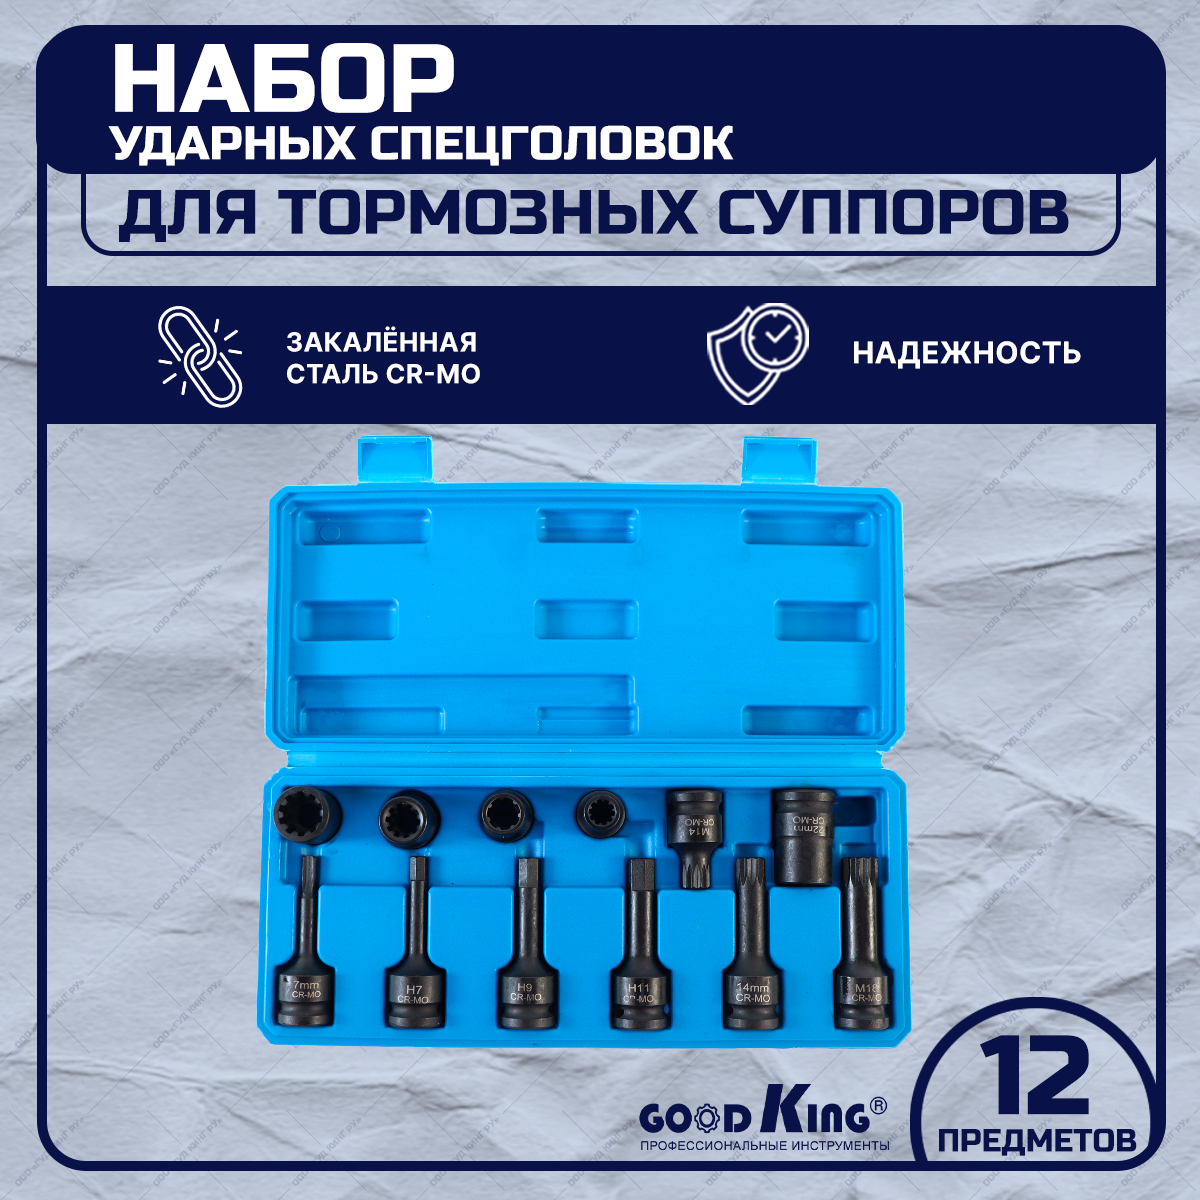 Набор ударных спецголовок для тормозных суппортов GOODKING UST-10012 12 предметов специальная торцевая головка для тормозных суппортов porsche мастак